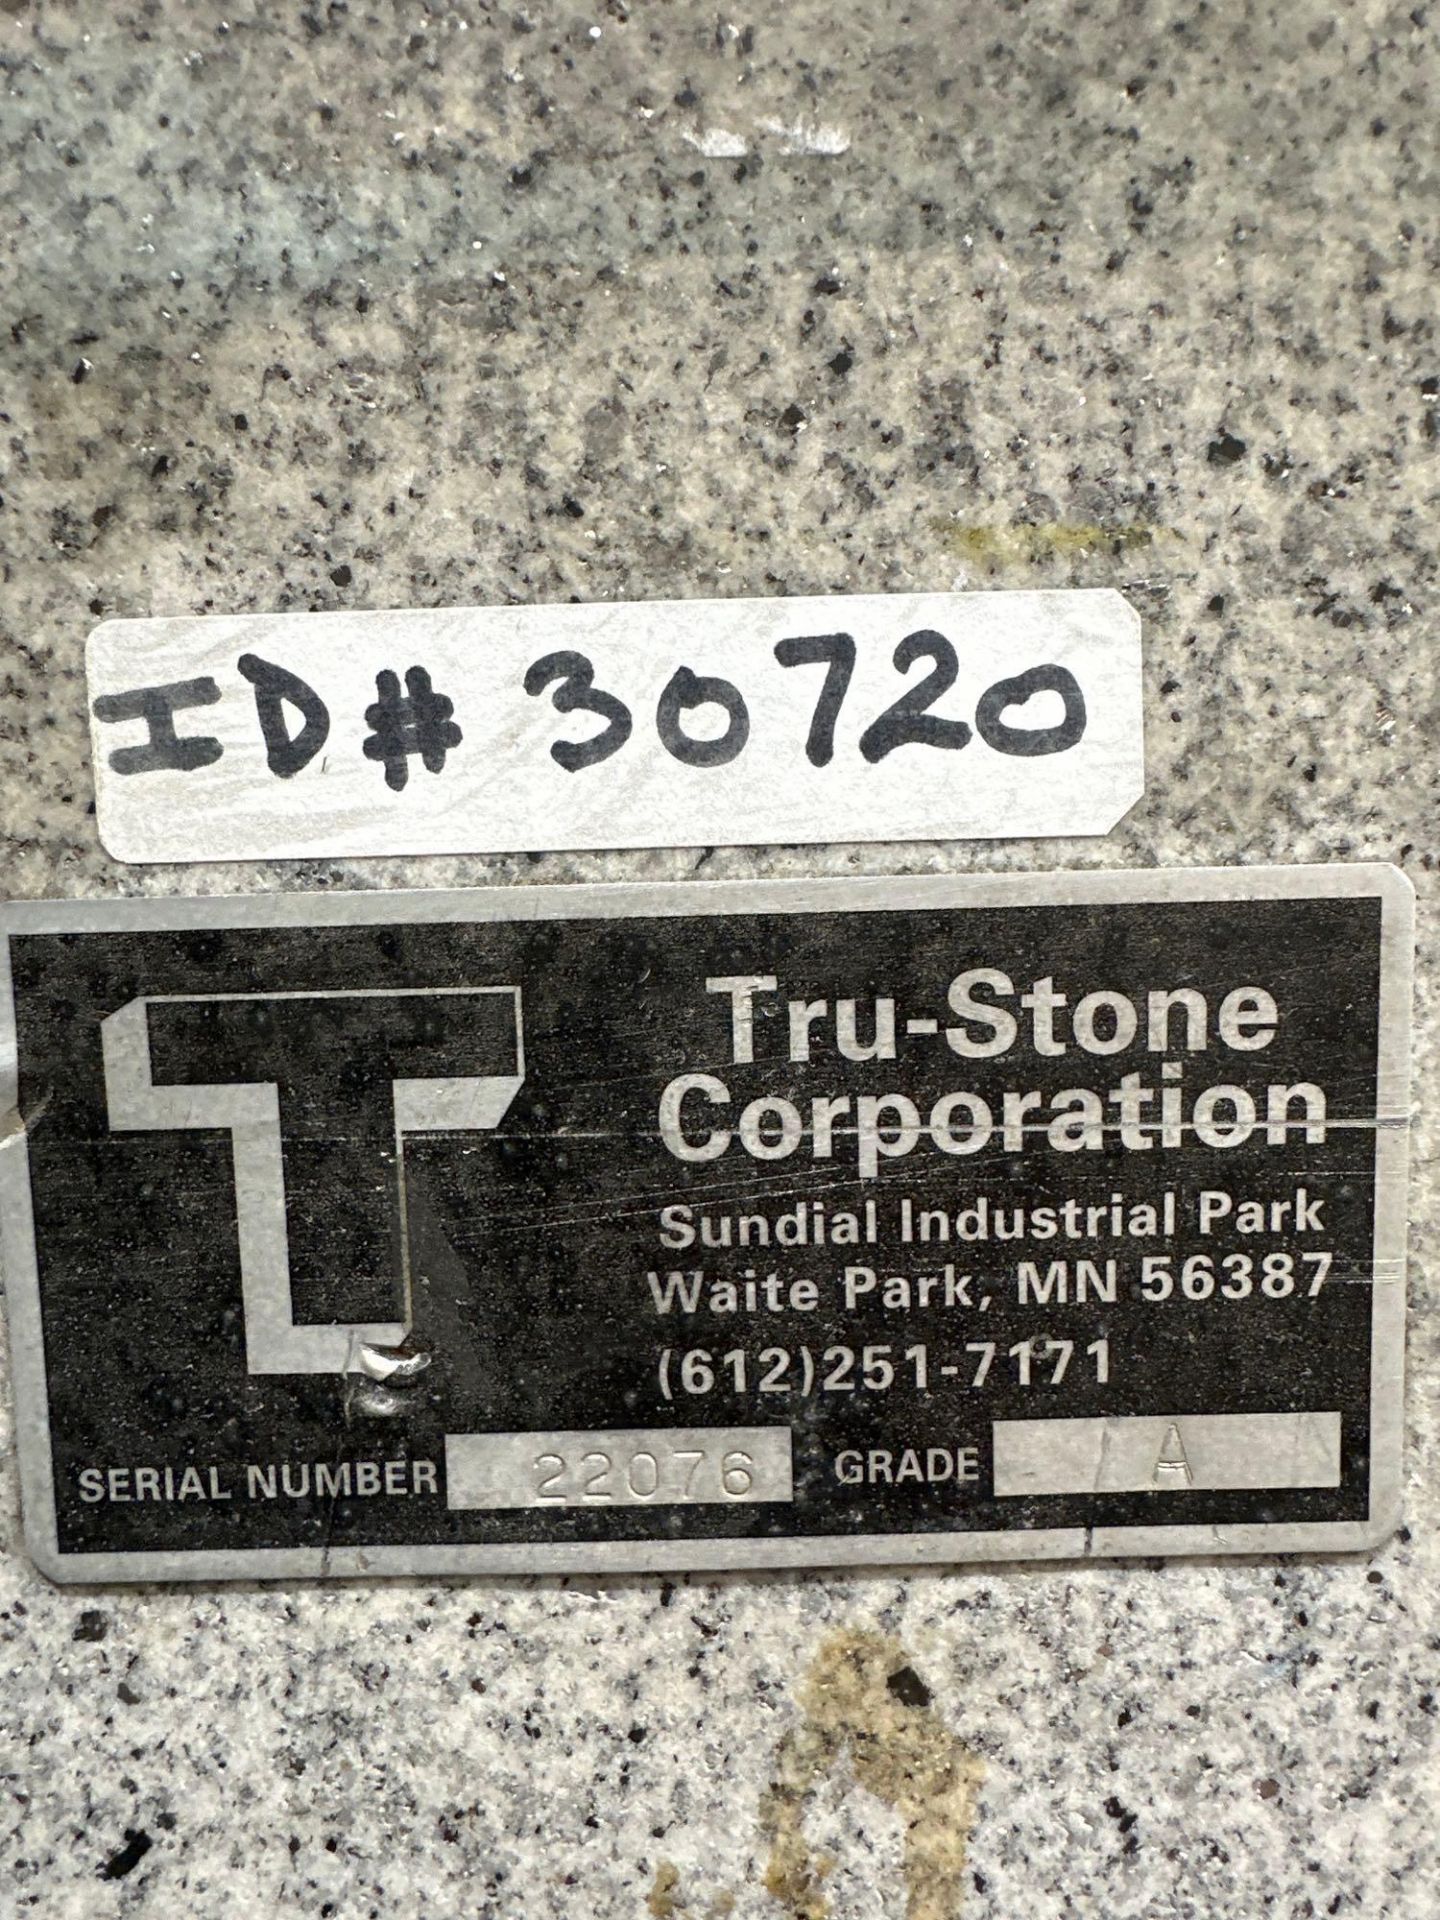 12” x 48” x 96” Grade A Tru-Stone Granite Surface Plate, s/n 22076